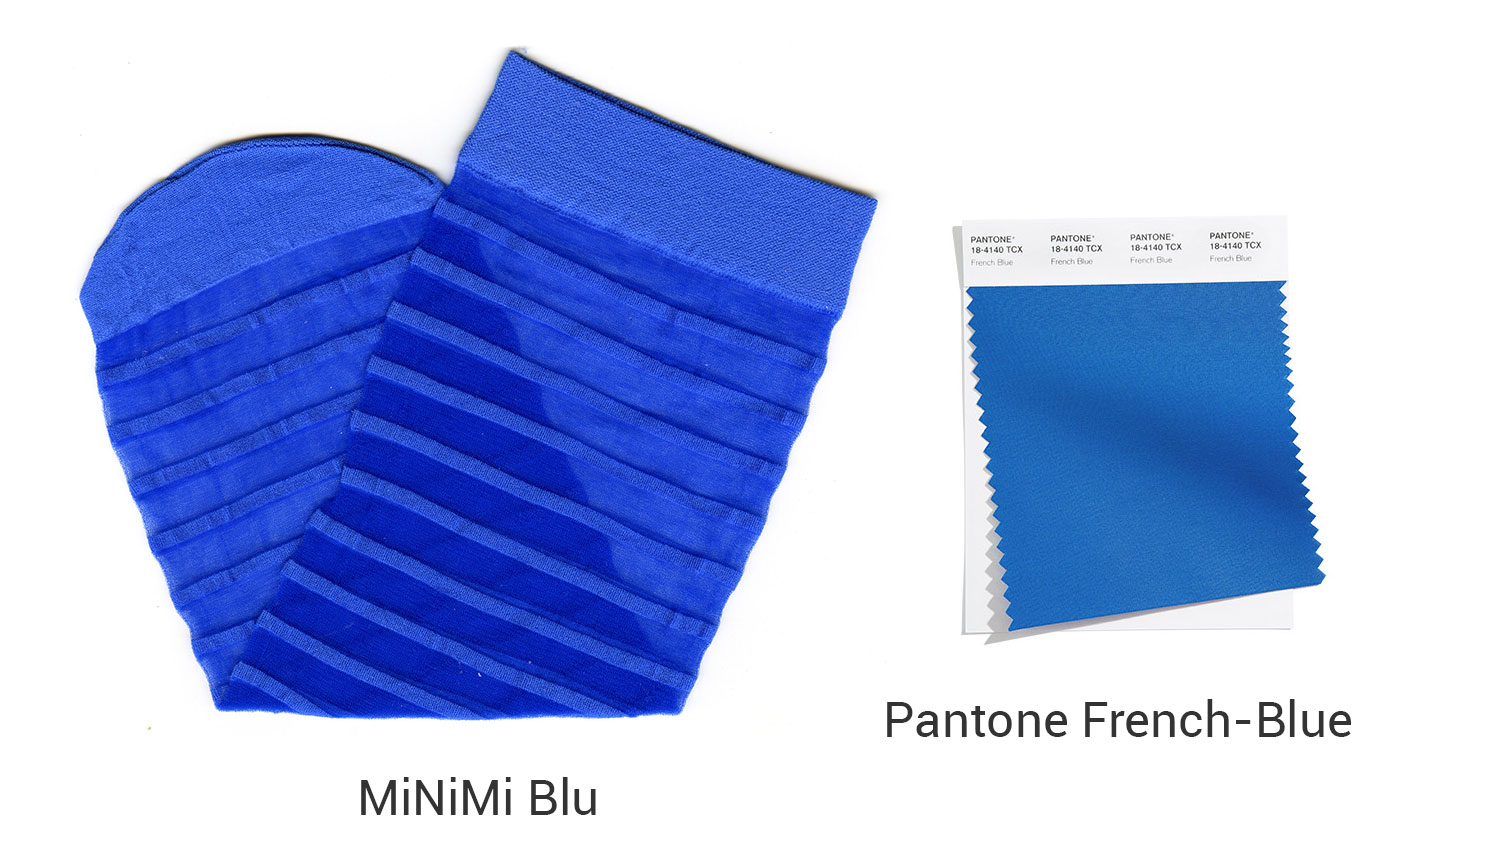 PANTONE Illuminating VS MiNiMi Blu